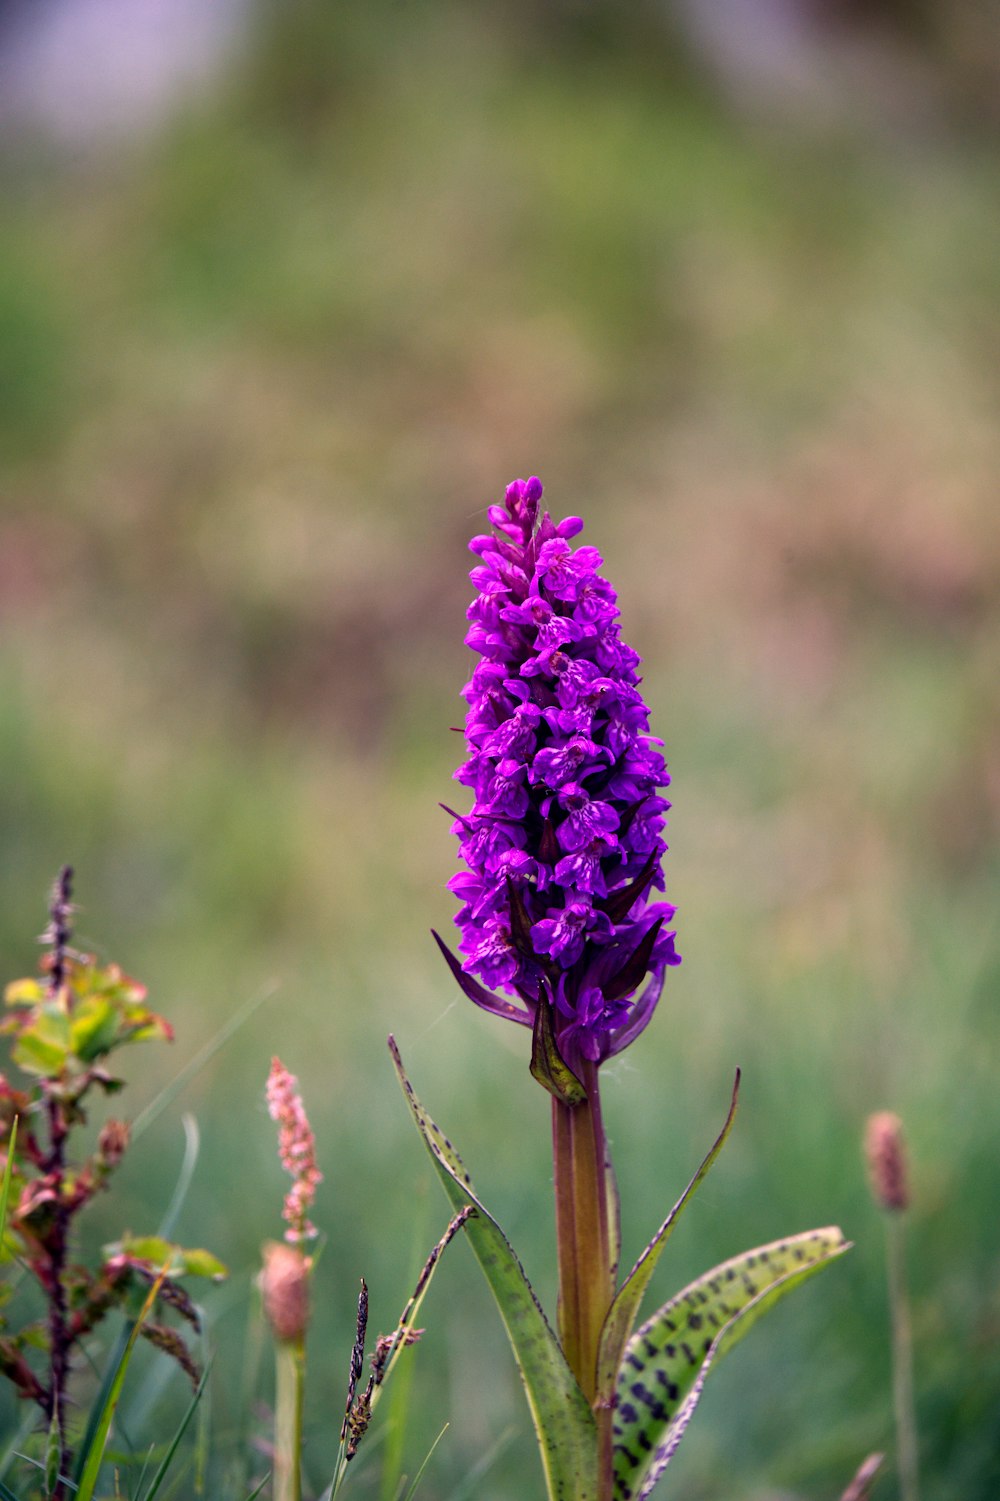 a purple flower in a field of grass